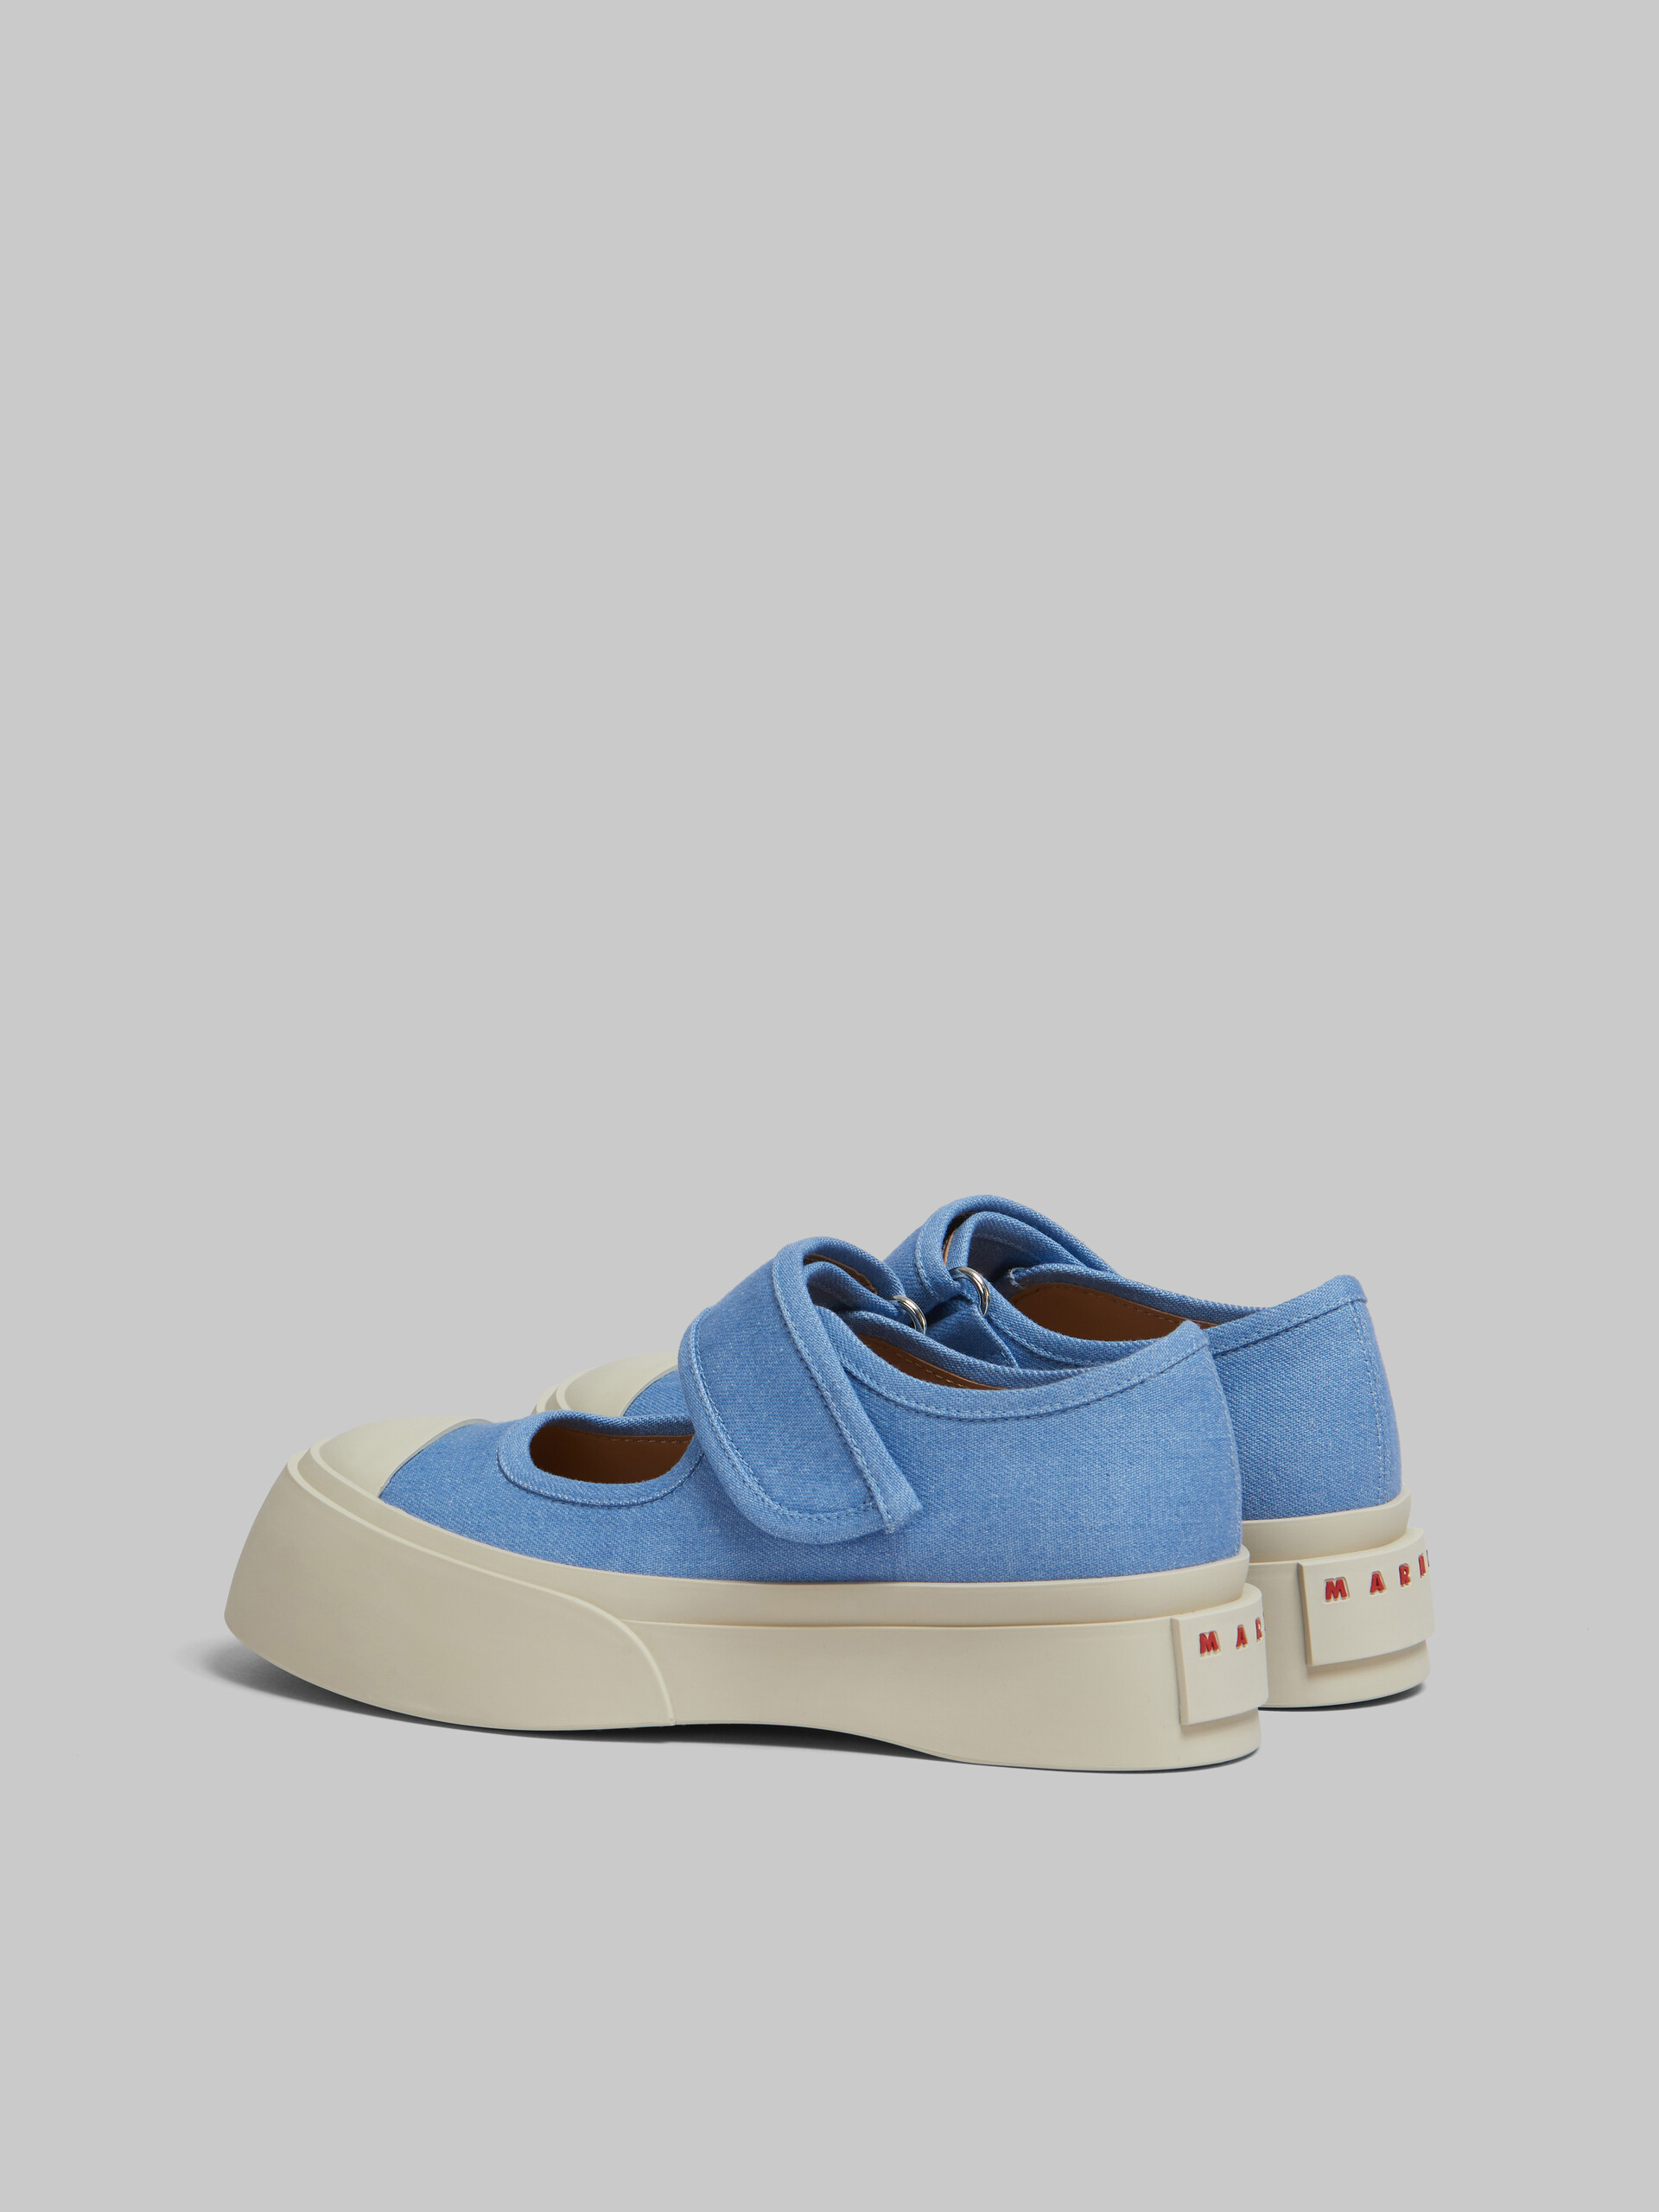 Hellblaue Mary Jane-Sneakers aus Denim - Sneakers - Image 3